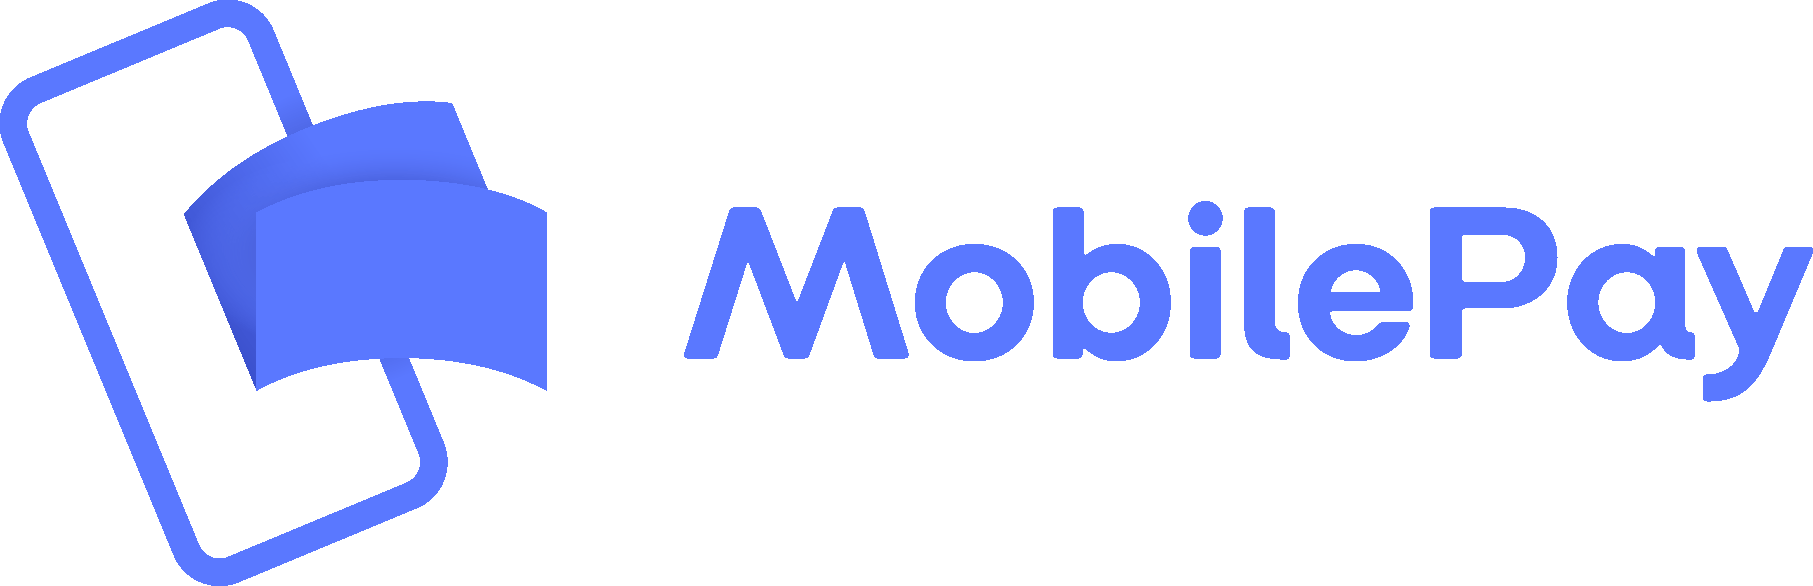 Mobilepay Logo png